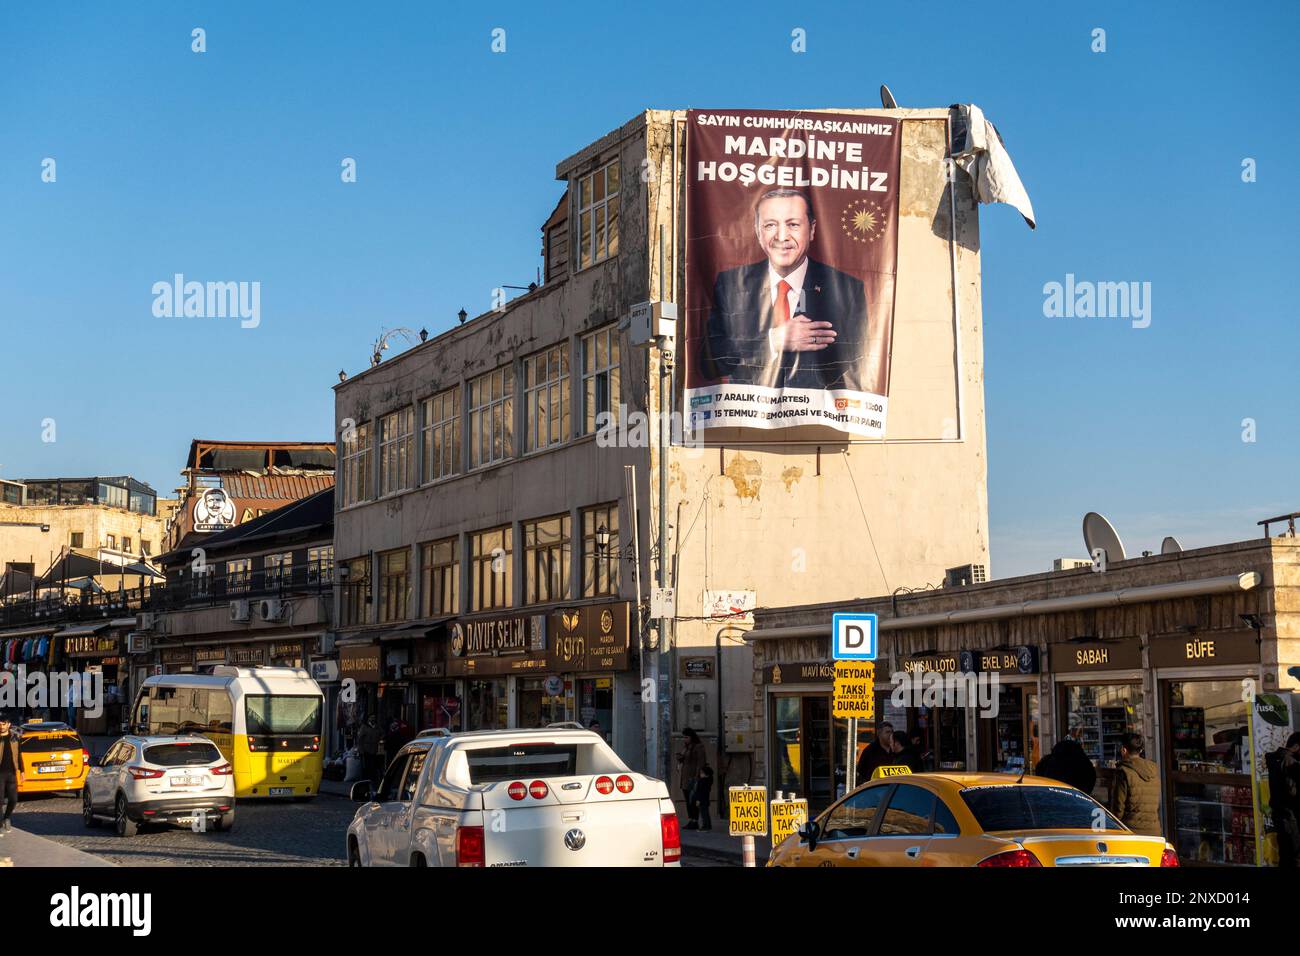 La campagne présidentielle de Recep Tayyip Erdoğan en prévision des élections dans la ville historique de Mardin en Turquie Banque D'Images